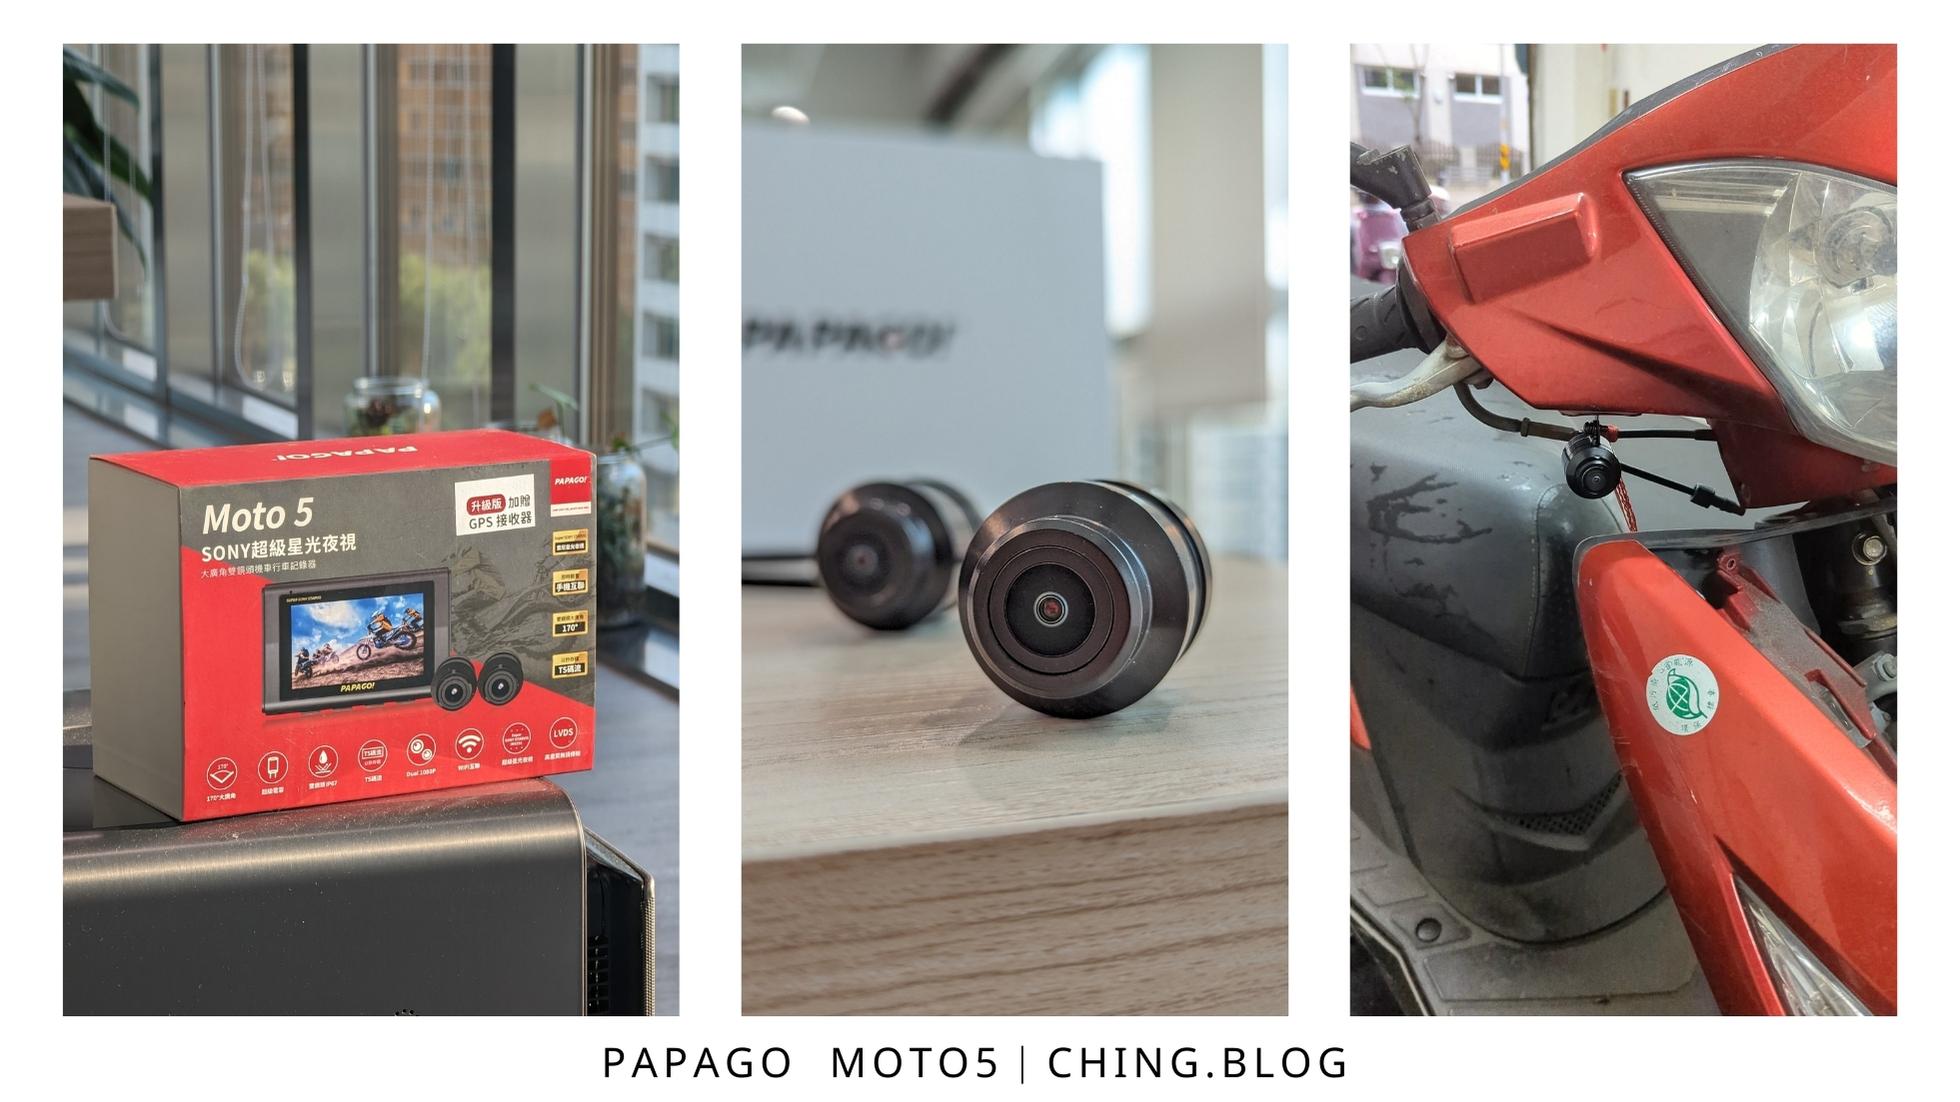 [開箱]PAPAGO MOTO 5 SONY超級星光夜視行車紀錄器推薦 行車安全幫手